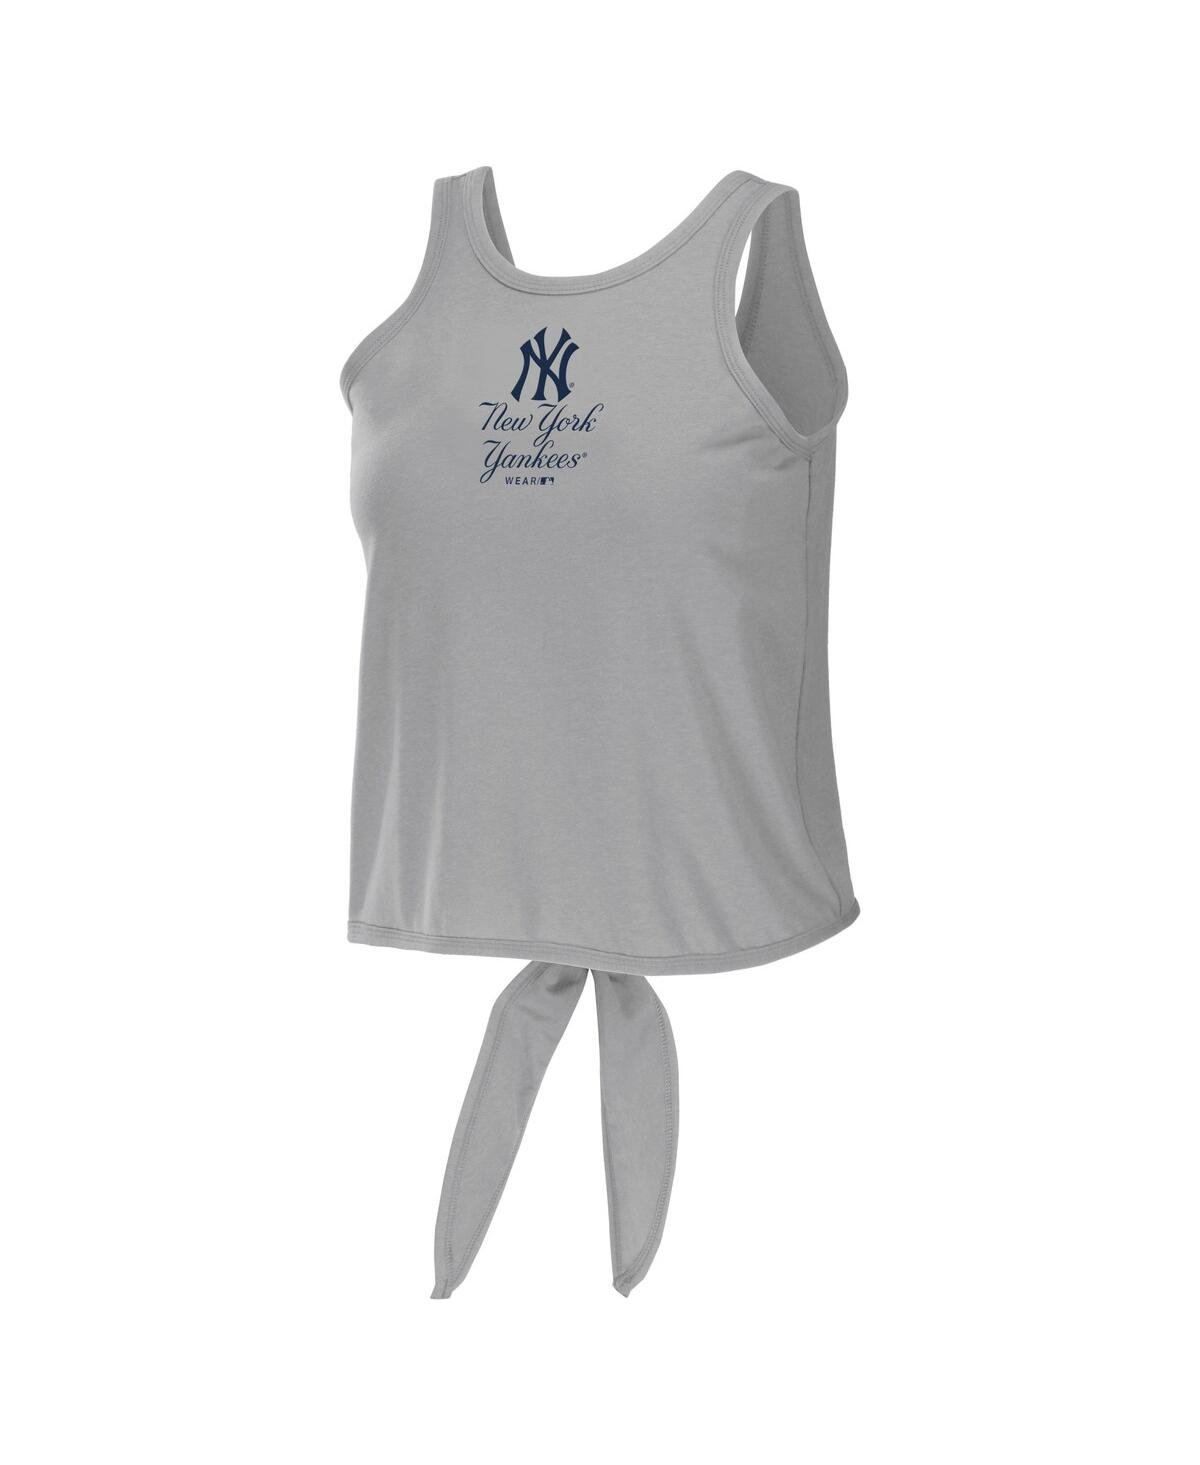 Shop Wear By Erin Andrews Women's  Gray New York Yankees Open Back Twist Tie Tank Top